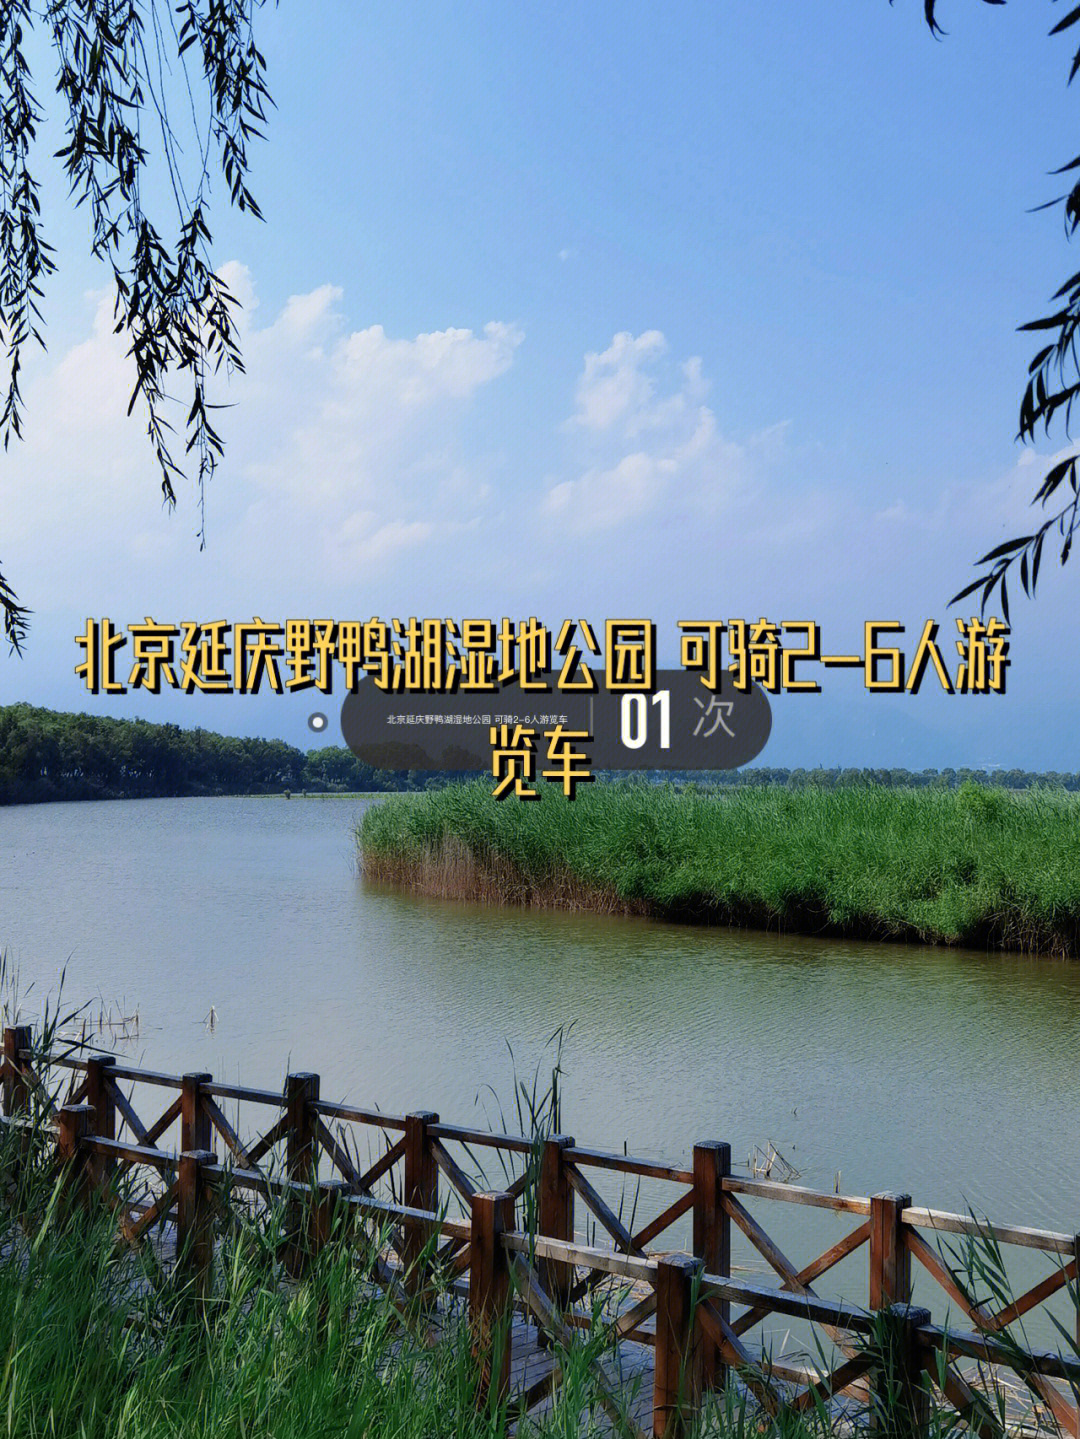 北京延庆野鸭湖湿地公园可骑26人游览车